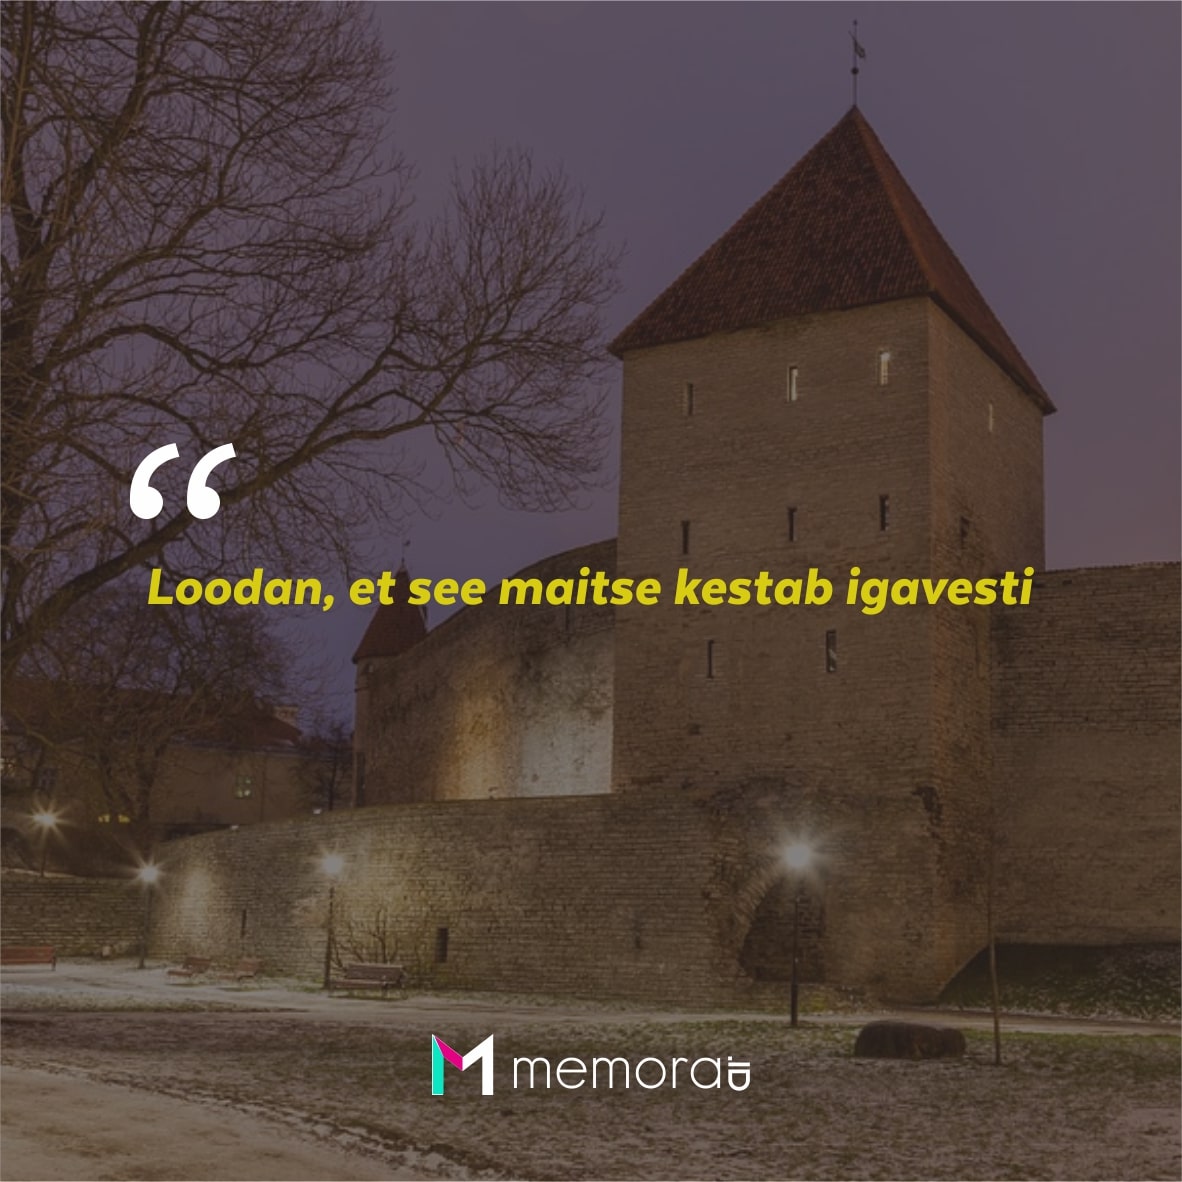 Kata-kata Cinta Romantis Bahasa Estonia